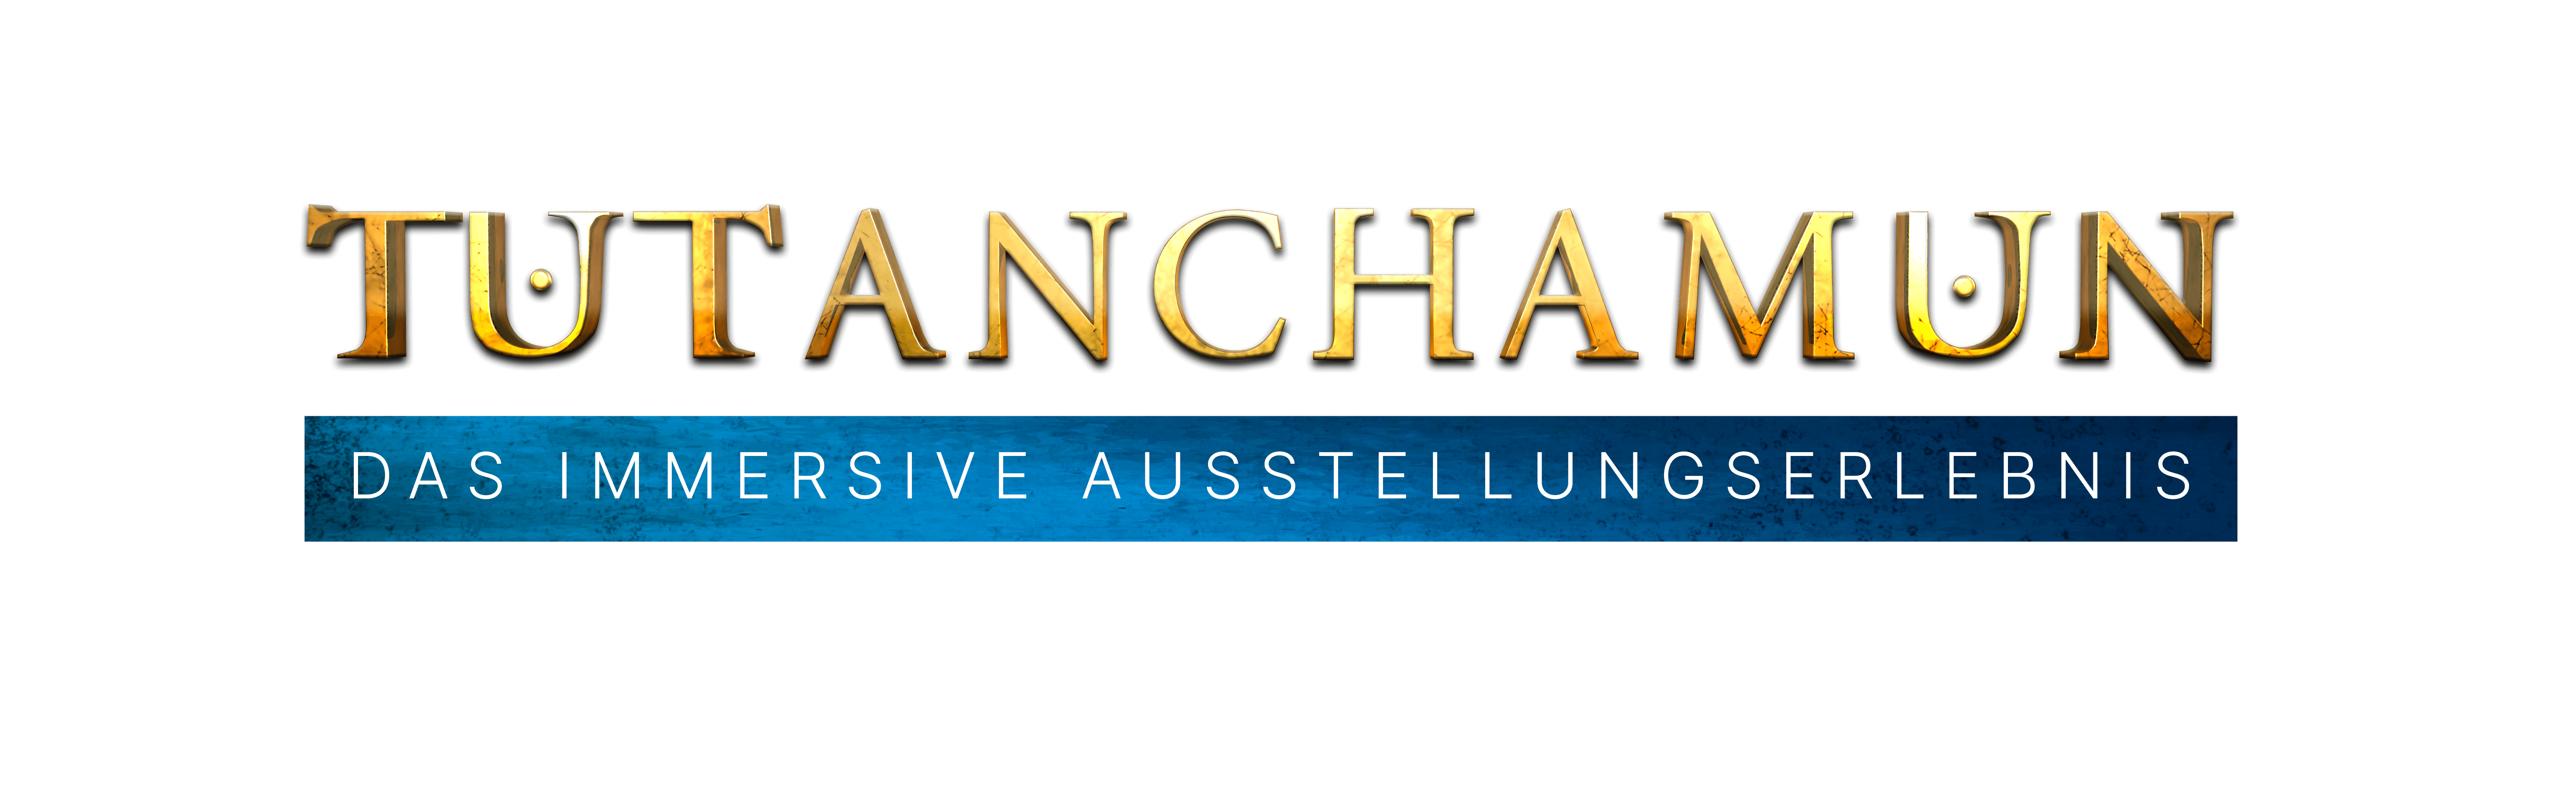 Tutanchamun logo